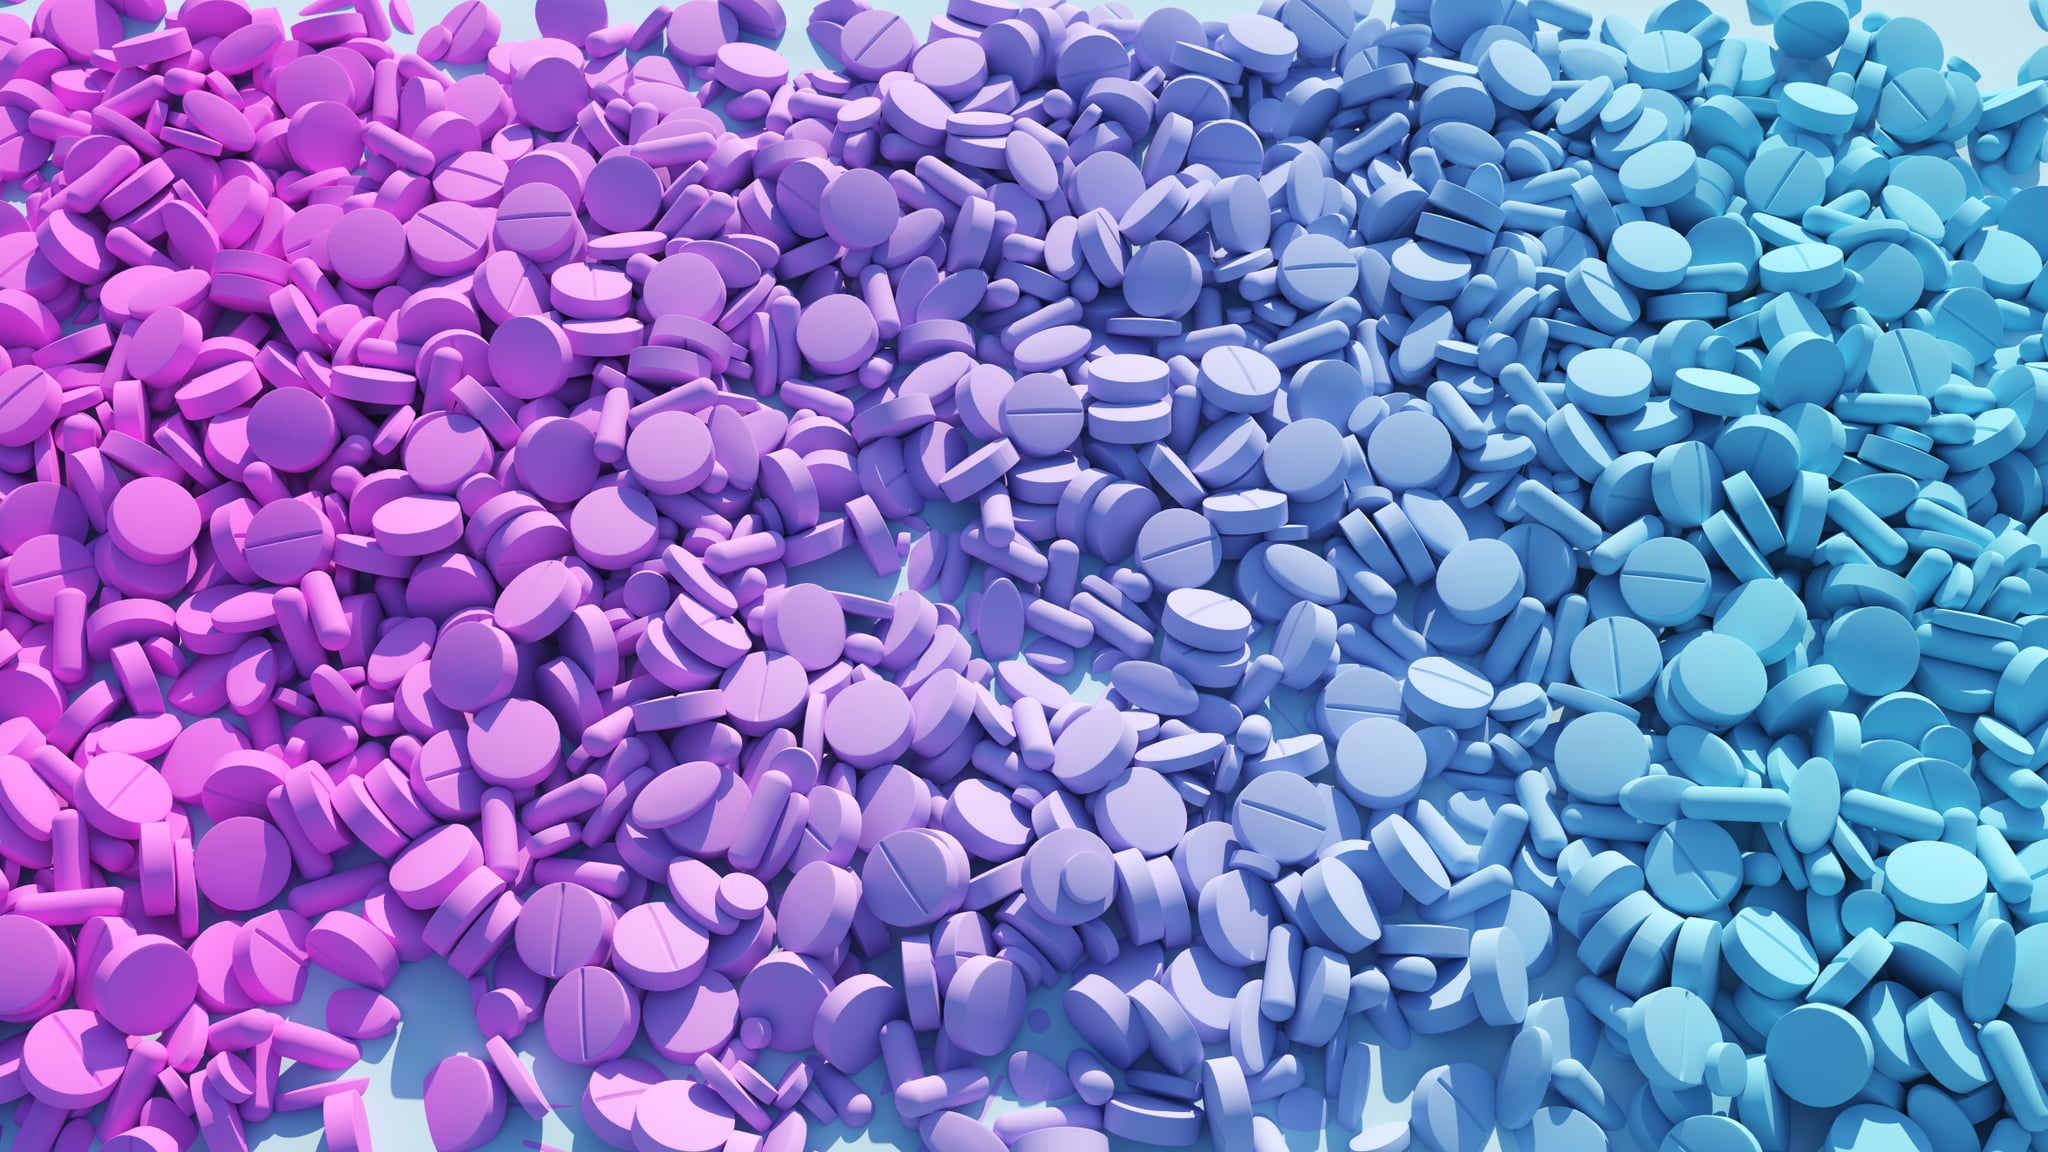 Pink Blue Transgender Medication Health Care Abstract Testosterone Oestrogen Pills Medical Ethics 3d illustration render